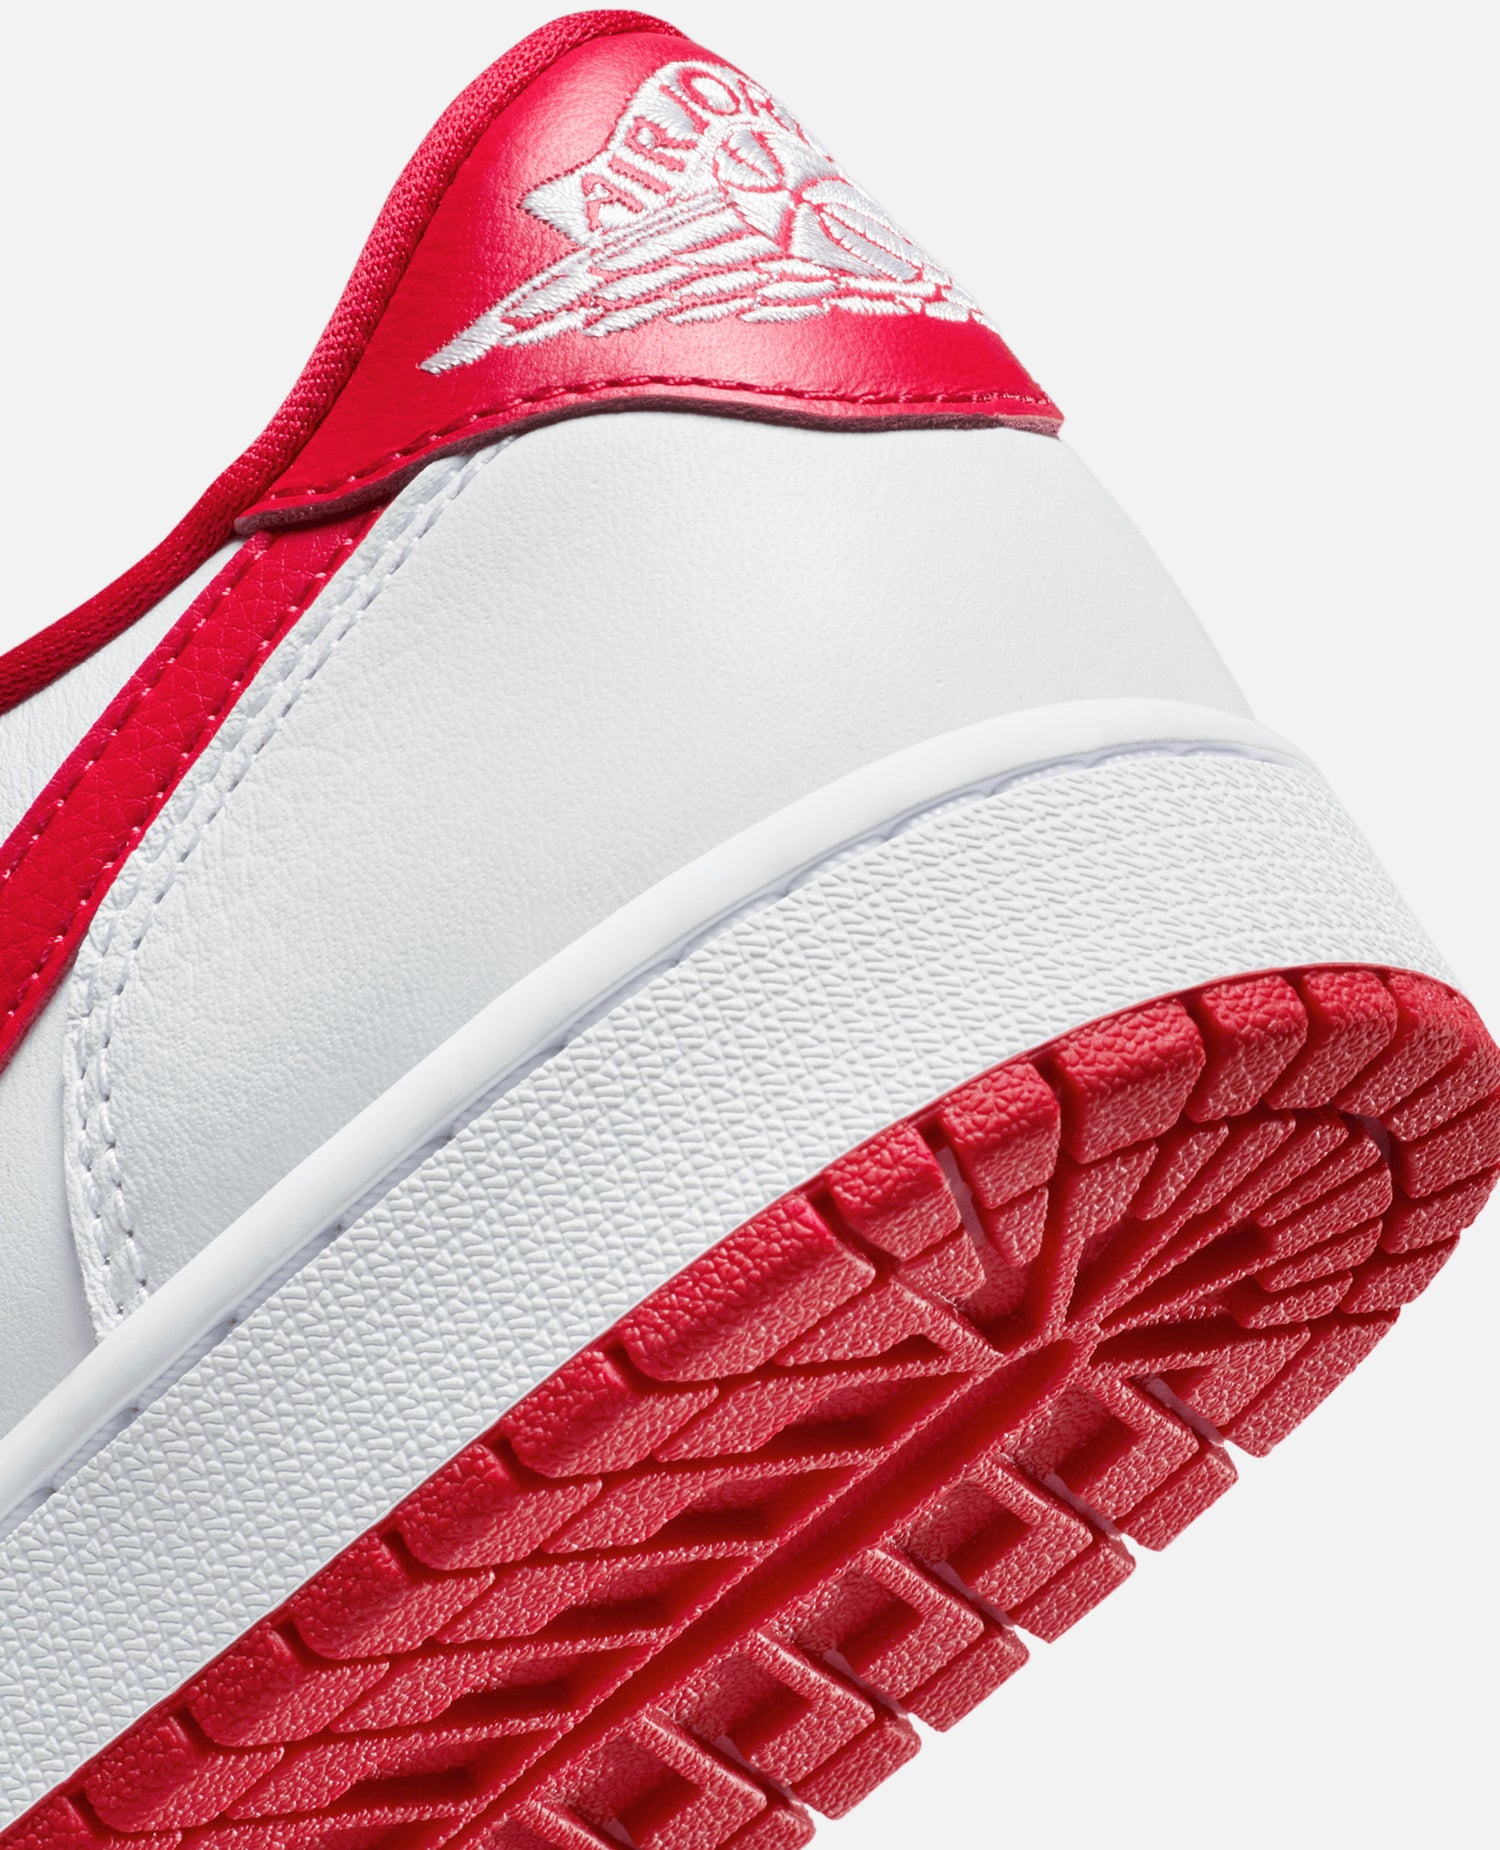 Air Jordan 1 Retro Low OG (White/University Red-White)